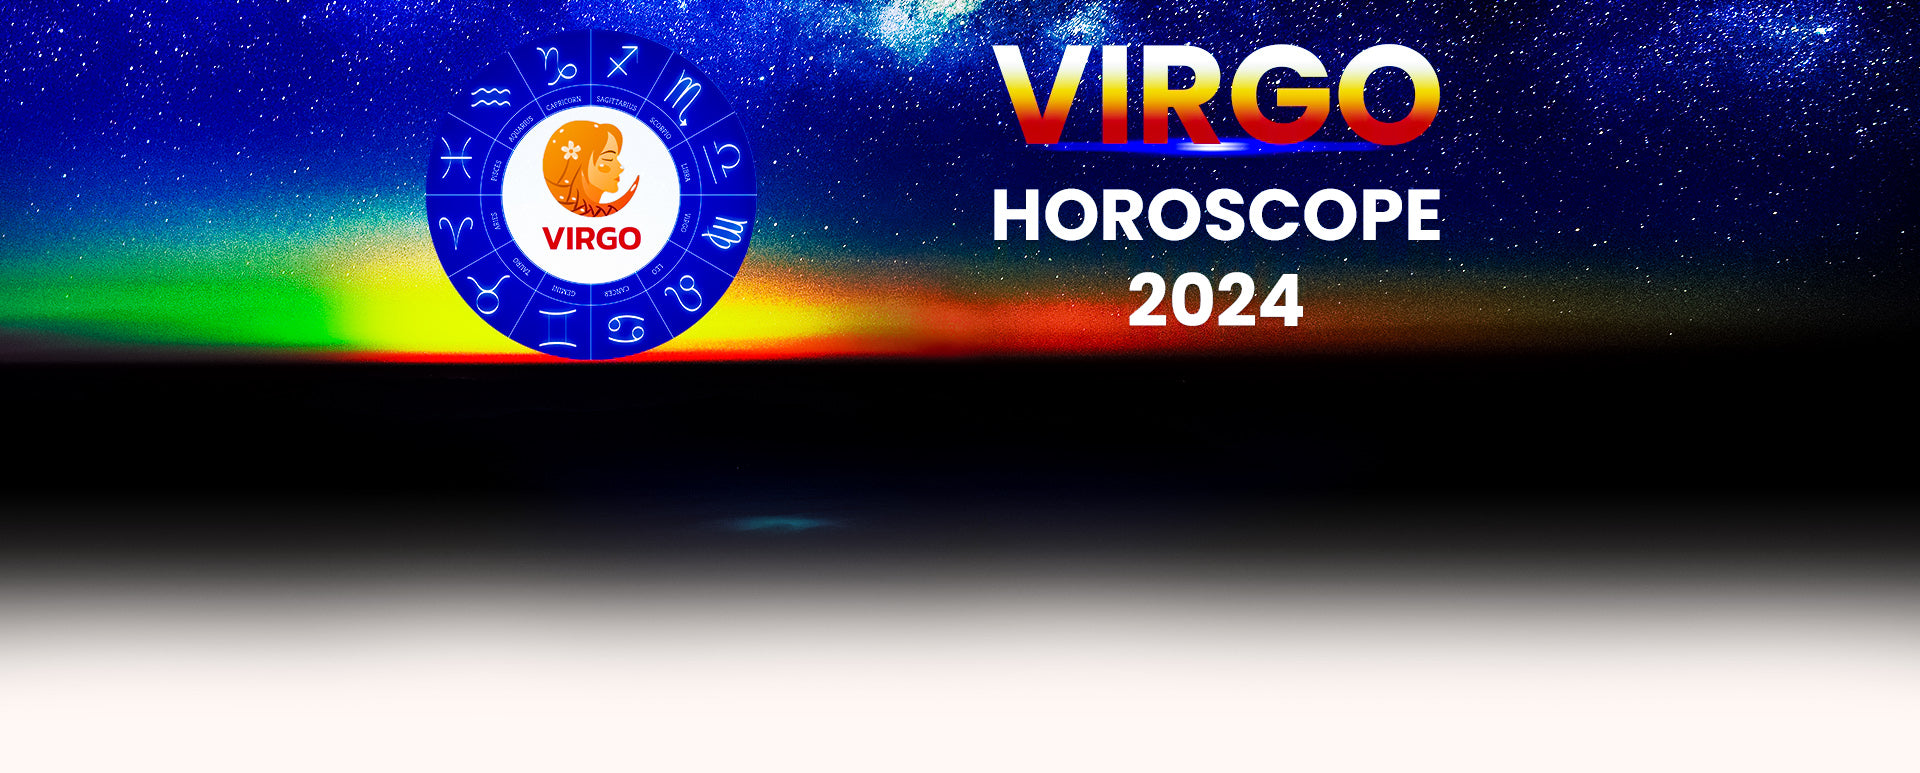 Virgo Horoscope 2024 Ganeshaspeaks Ros Leoine